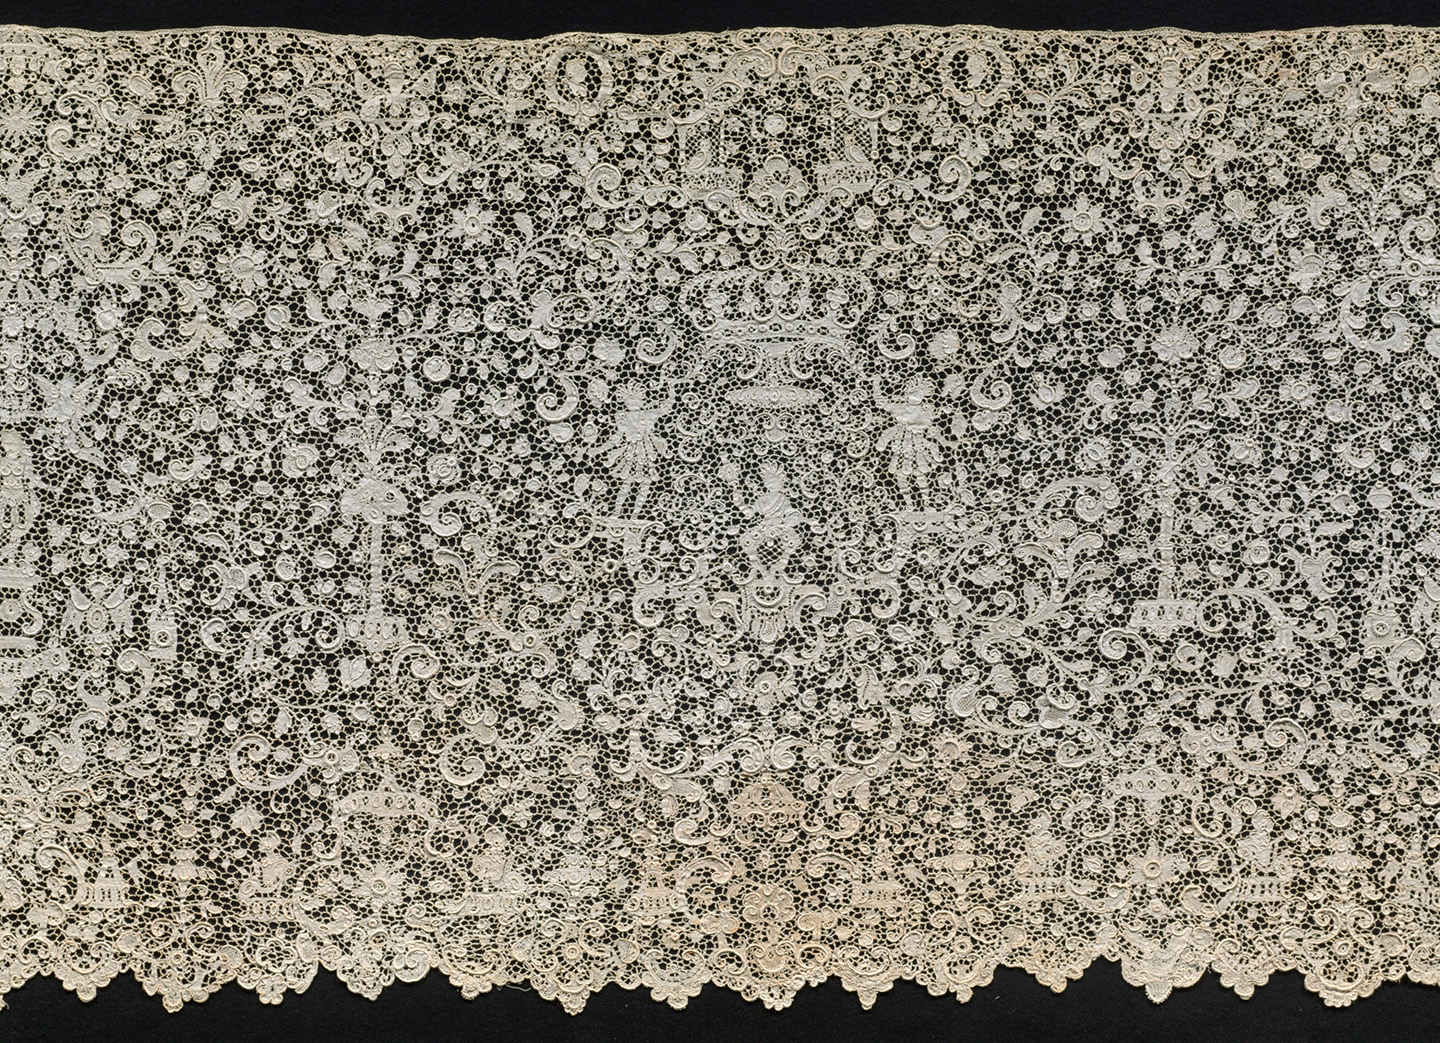 Đồ trang trí bằng vải ren kim Point de France, cuối thế kỷ 17. Vải lanh; kích thước tổng thể 266.7cm x 58.4 cm. (Ảnh: Đăng dưới sự cho phép của Bảo tàng Nghệ thuật Baltimore)